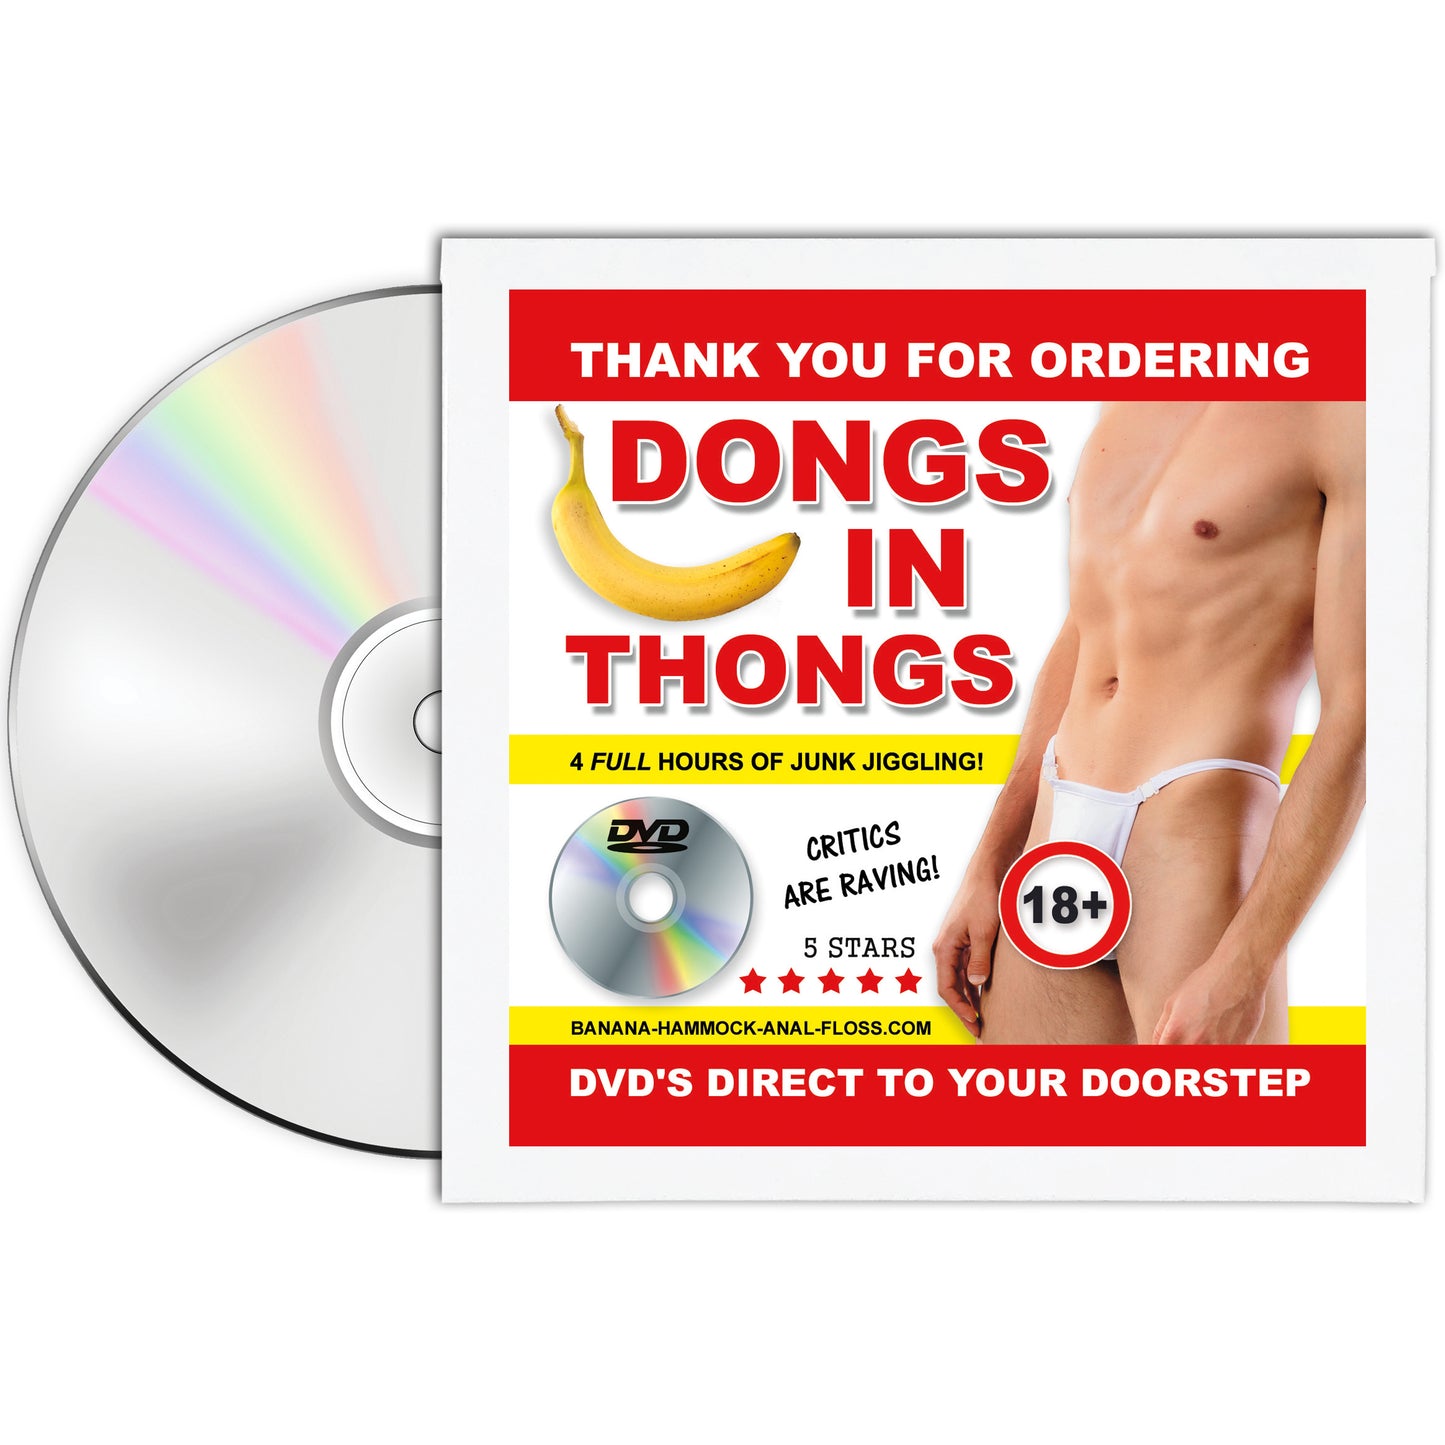 Dongs in Thongs Prank DVD Mailer Gag